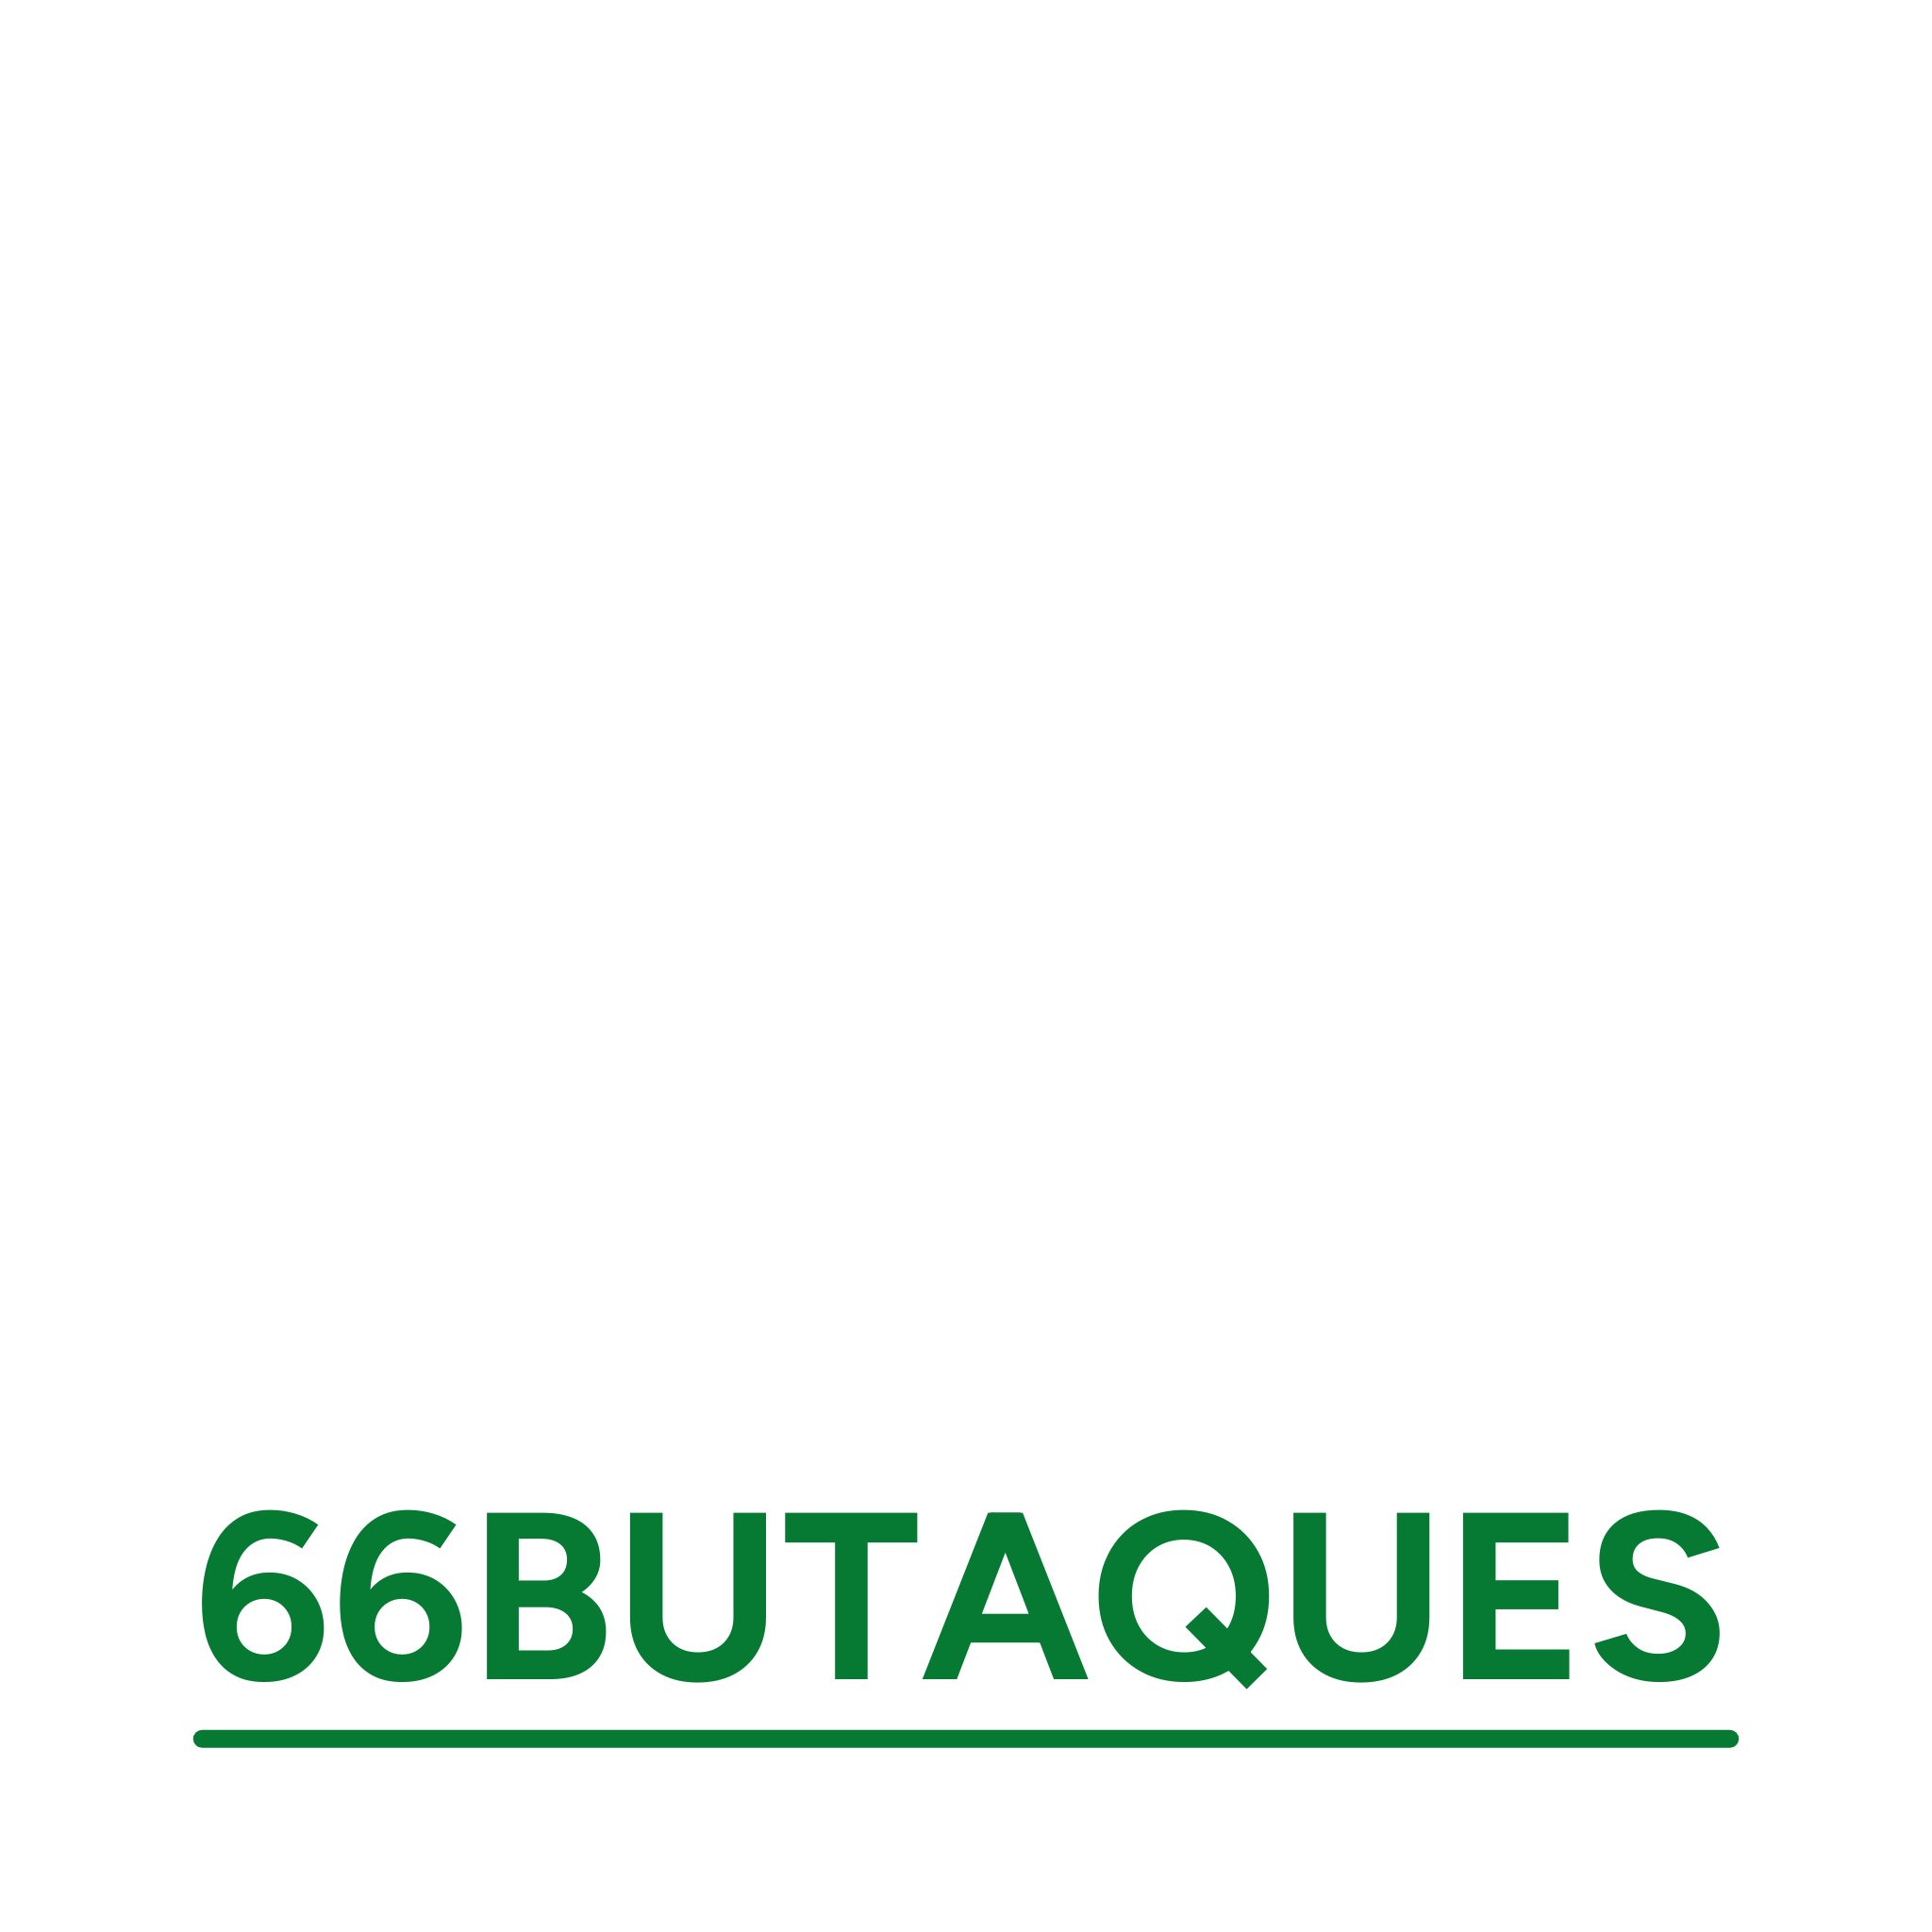 66 Butaques